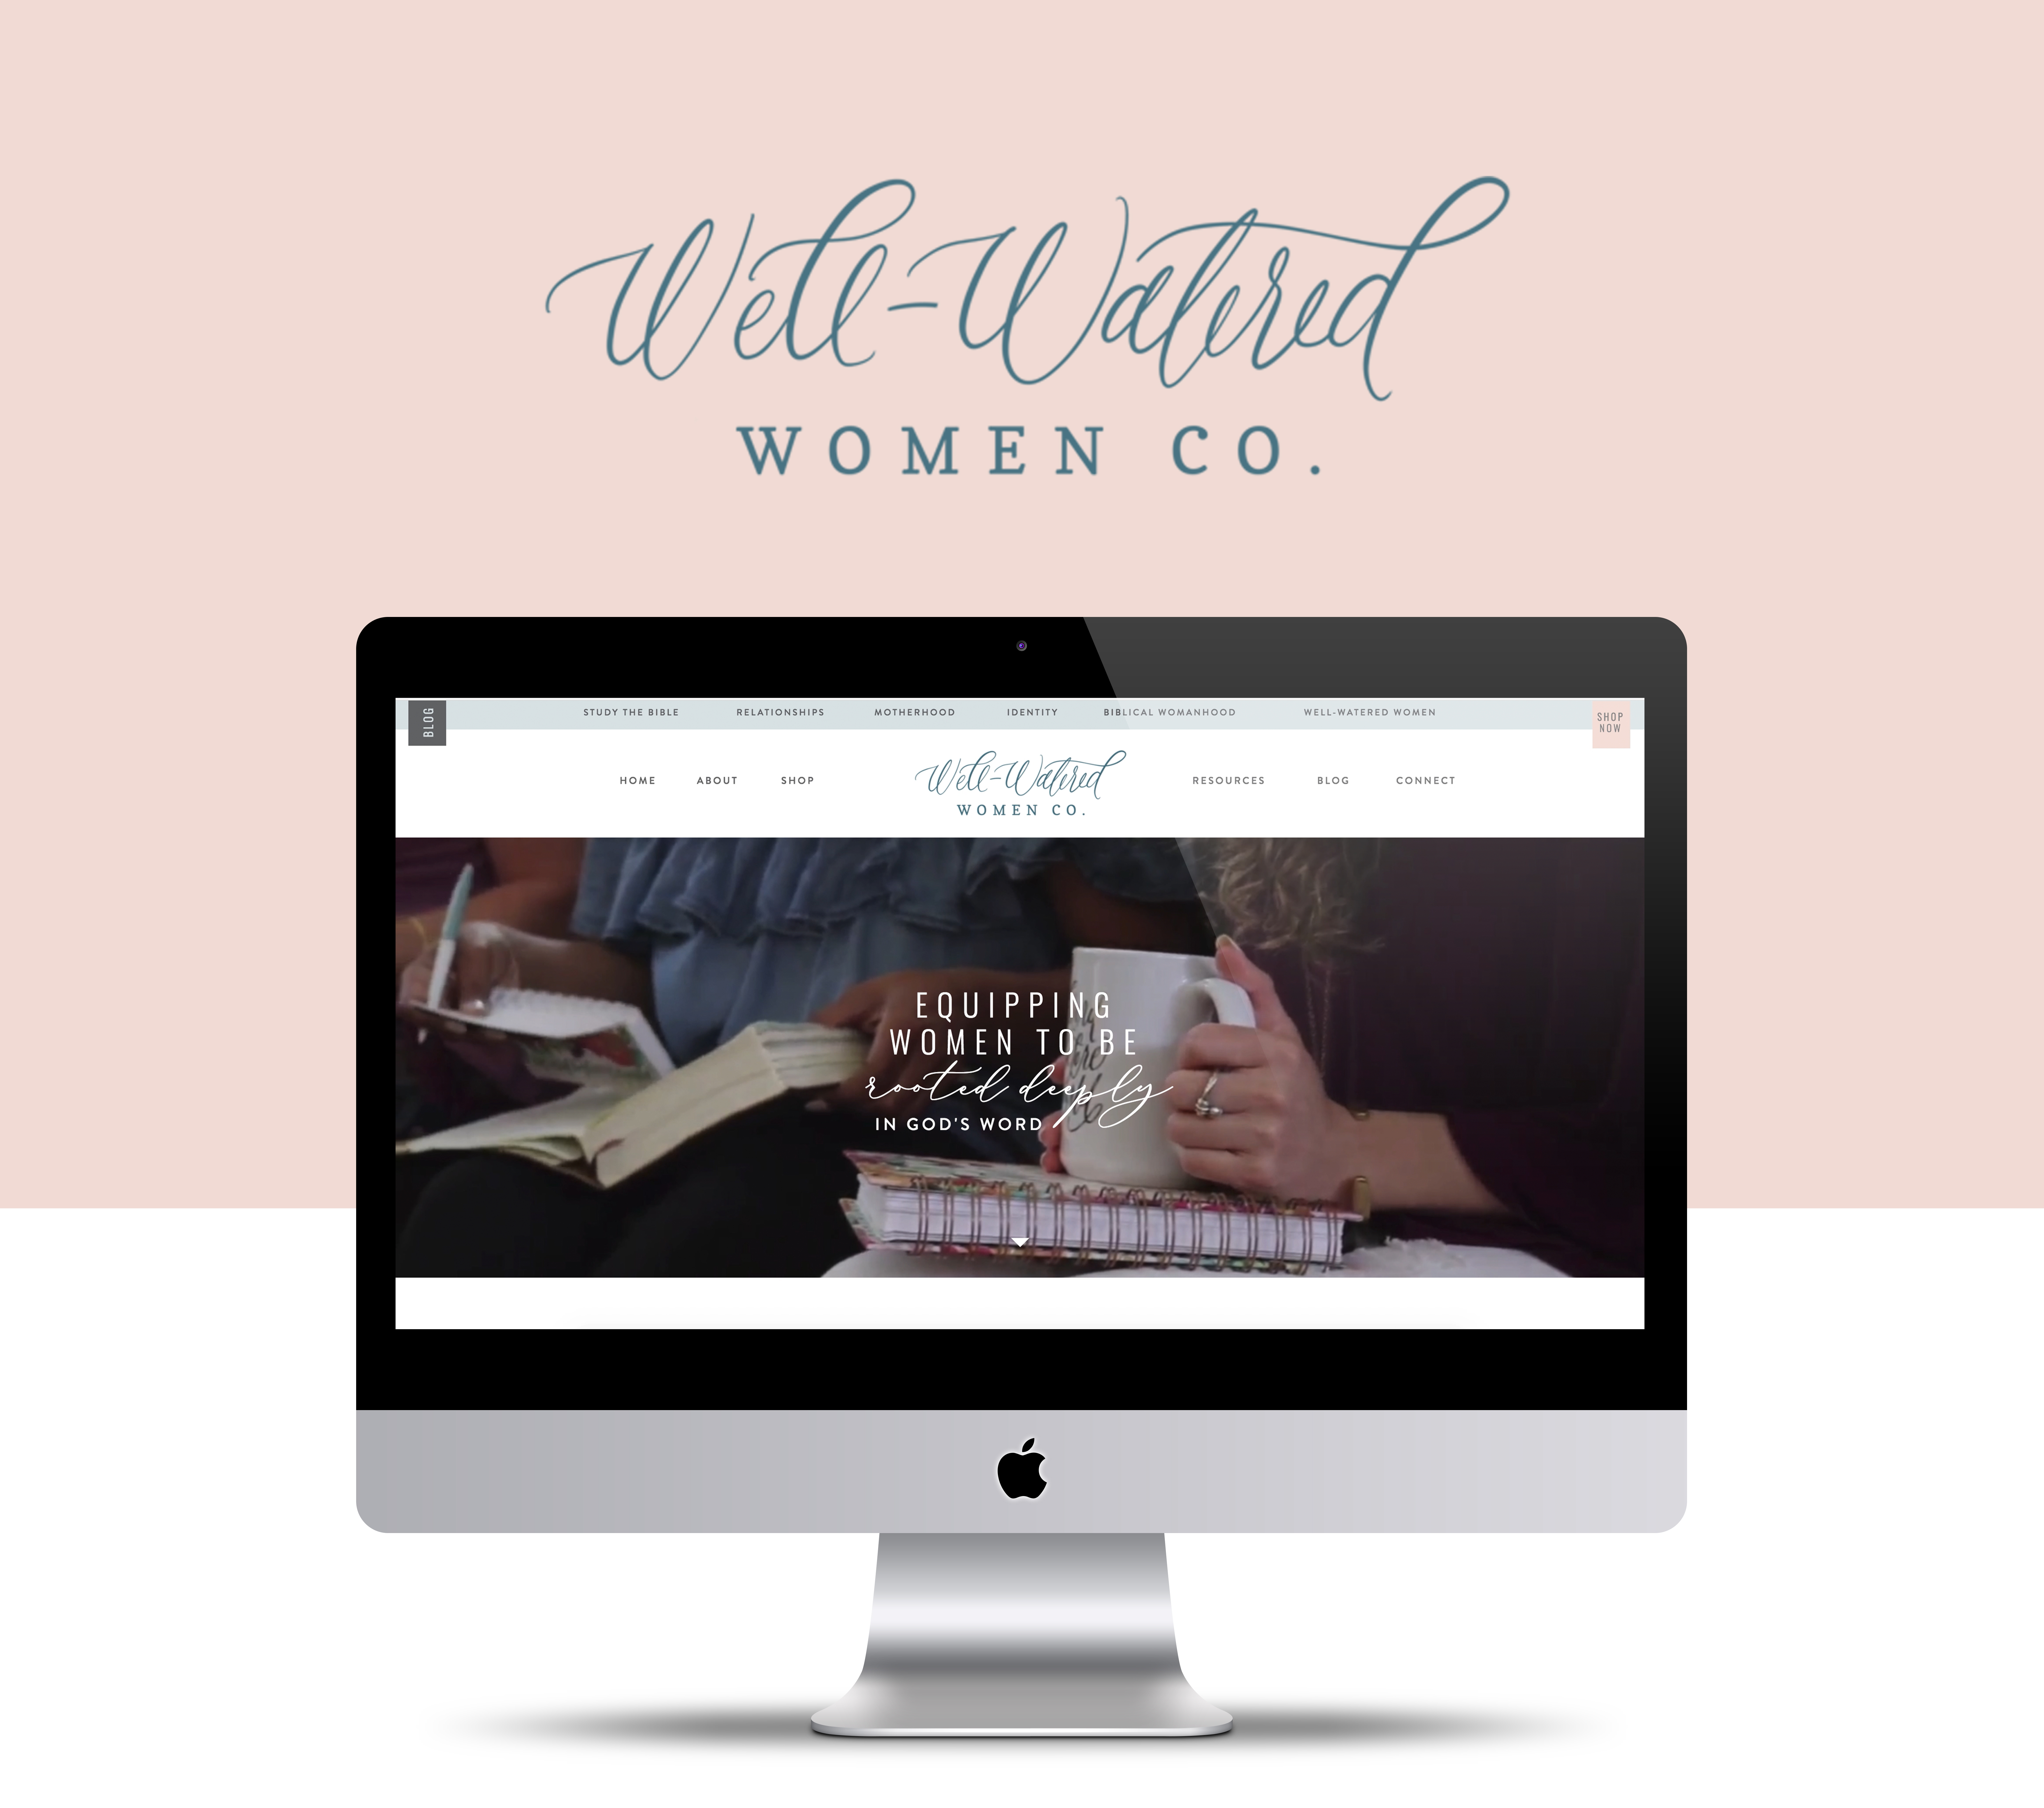 Well-Watered Women - Website Design by Speak Social Agency